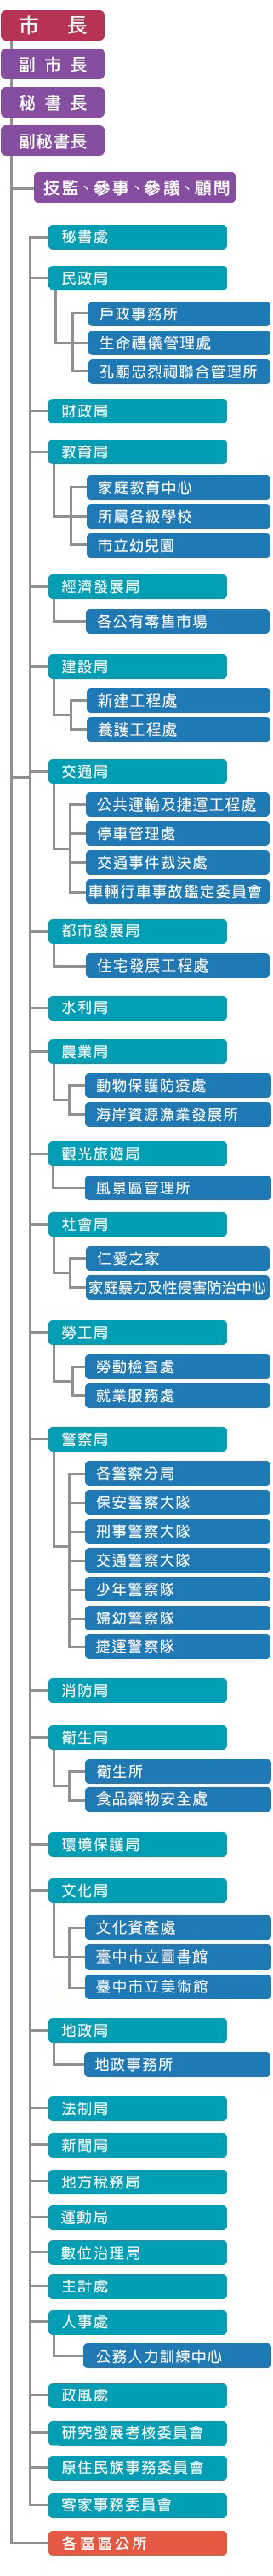 臺中市政府組織編制架構圖